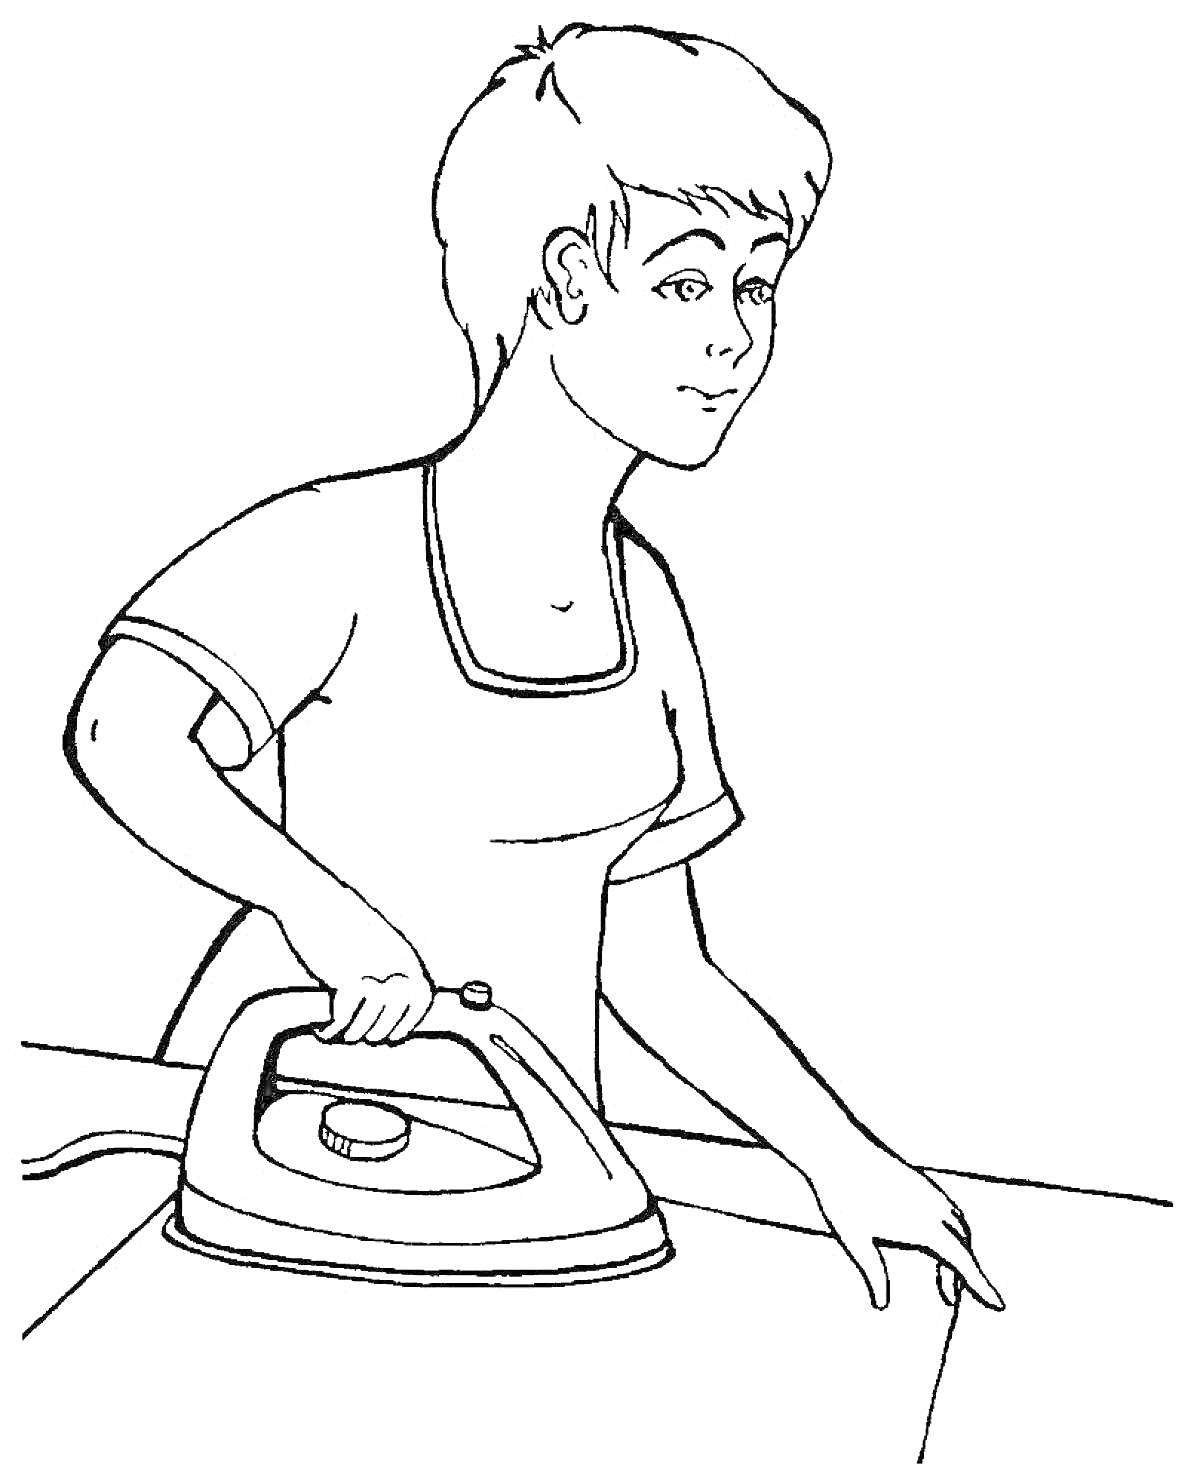 Раскраска Женщина гладит одежду утюгом на гладильной доске